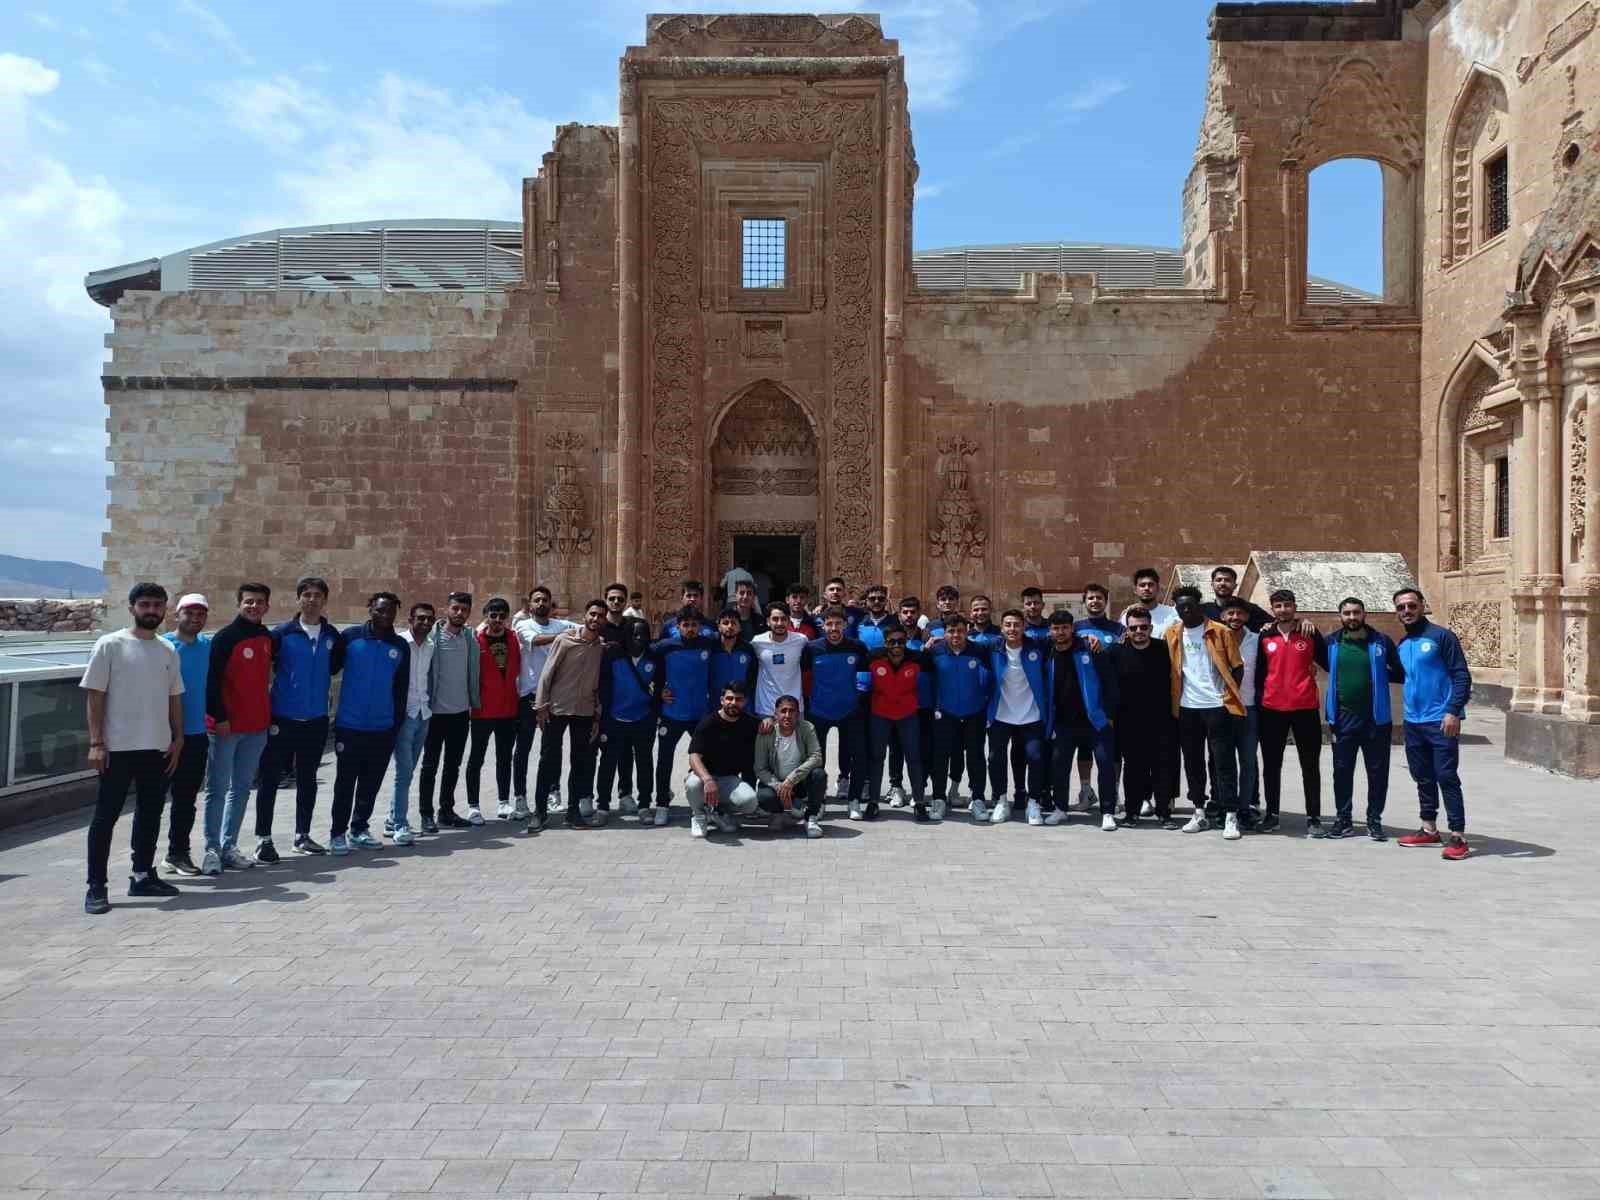 misafir sporcu öğrenciler, i̇shak paşa sarayı’nda tarihe yolculuk yaptı